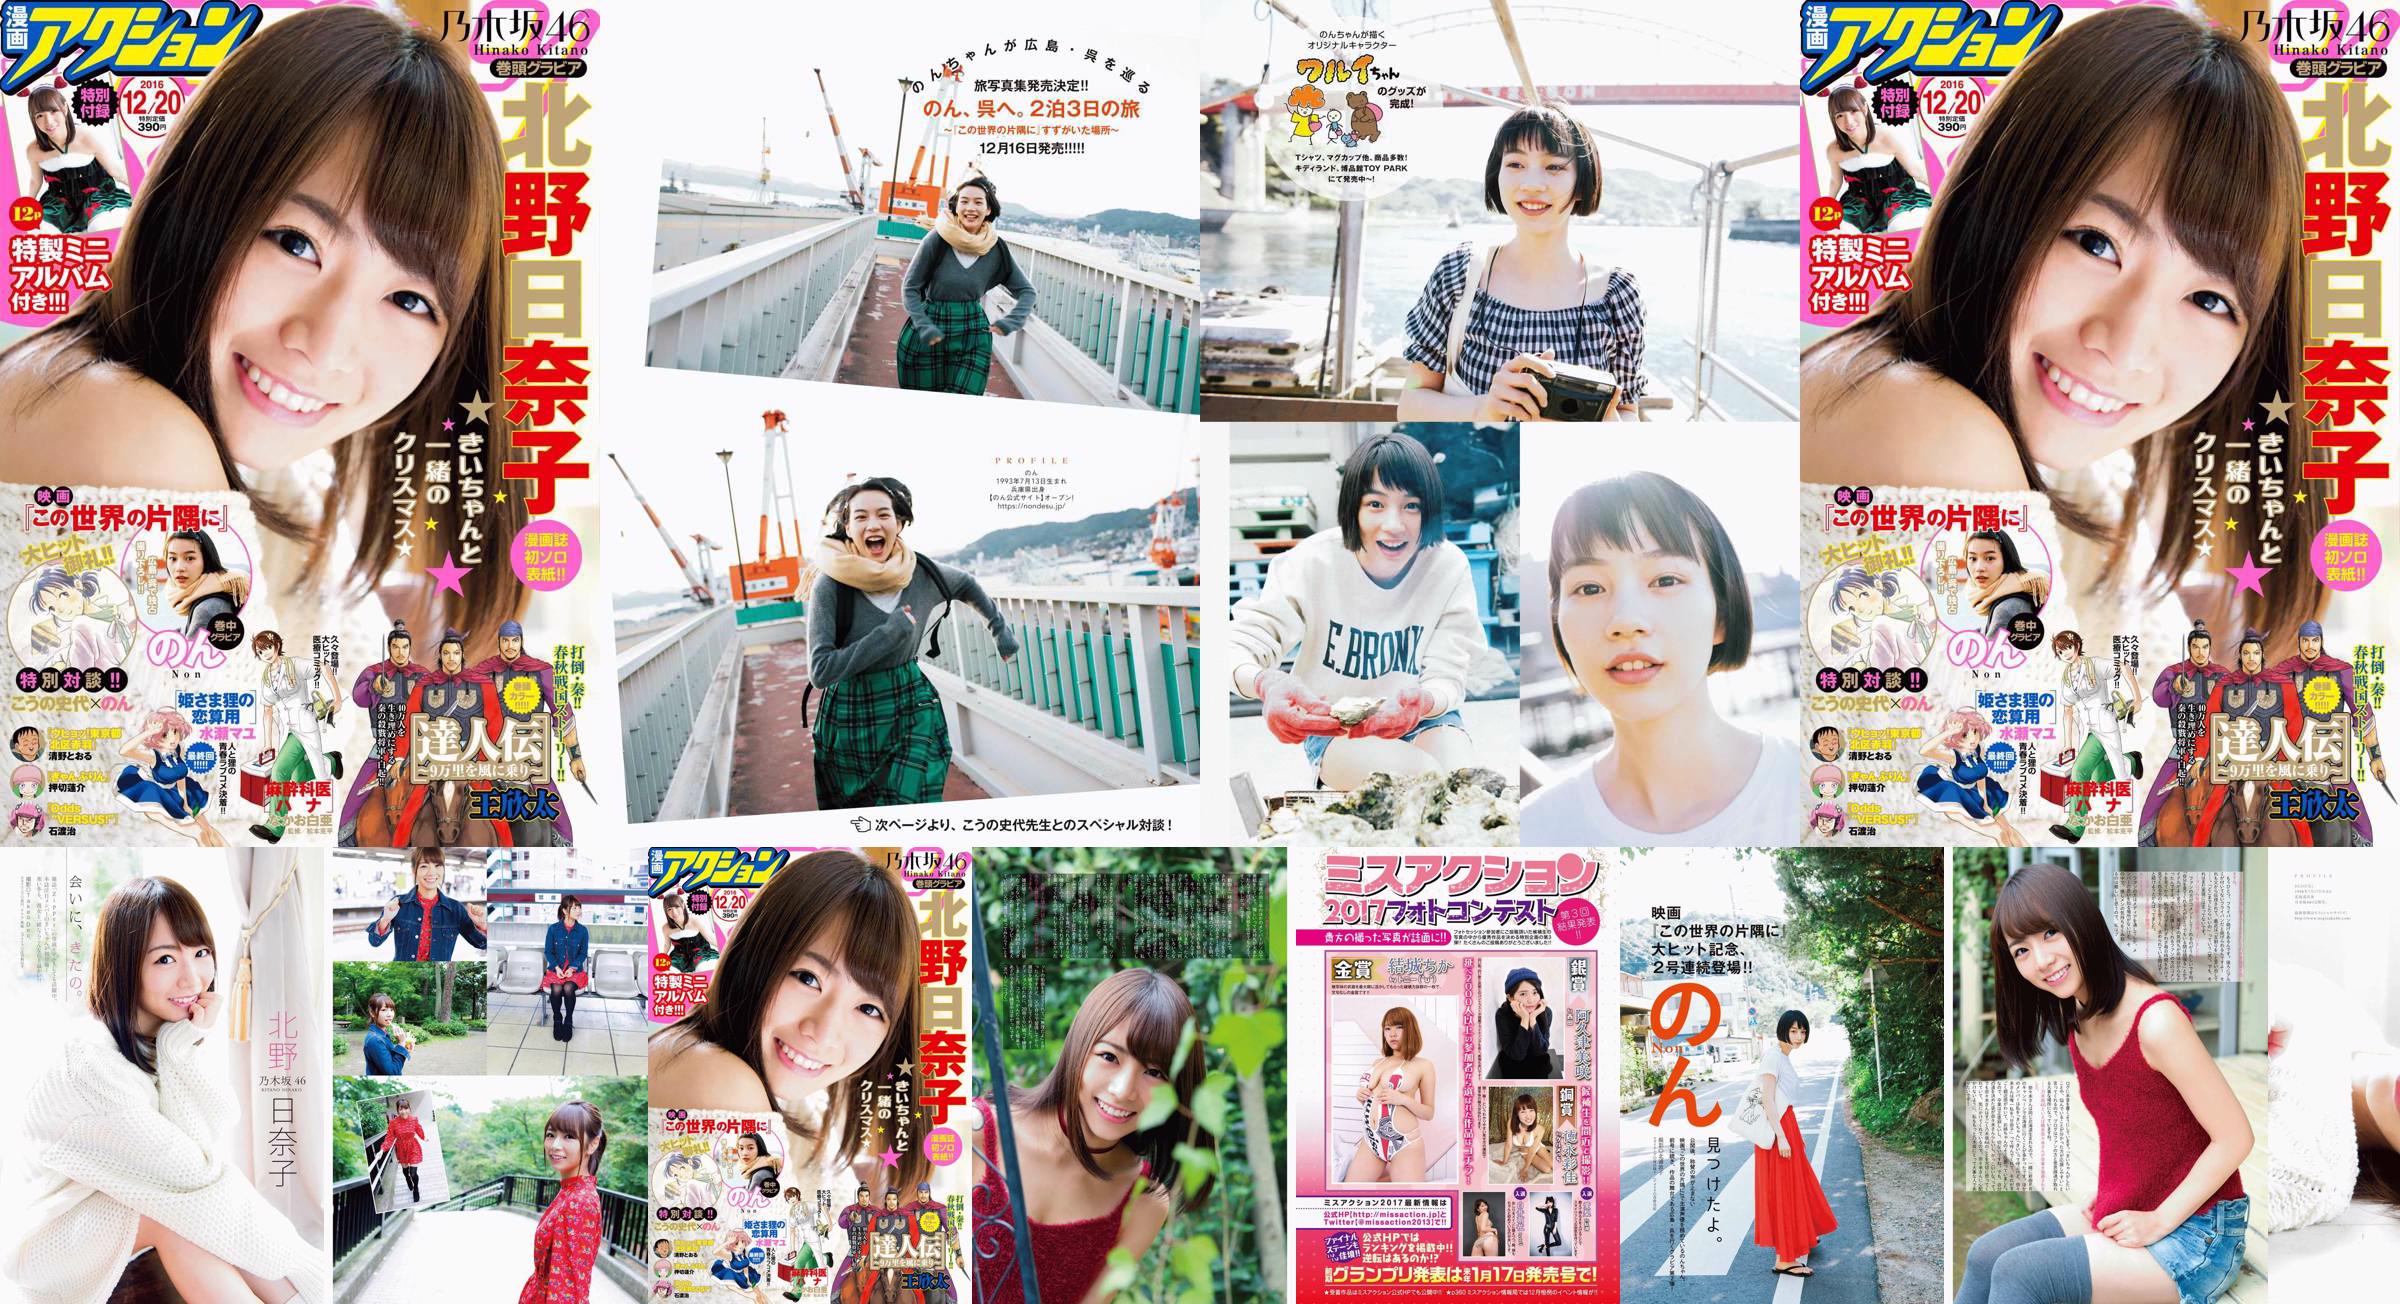 [Manga Action] Kitano Hinako のん 2016 No.24 Photo Magazine No.ff19a6 Pagina 1